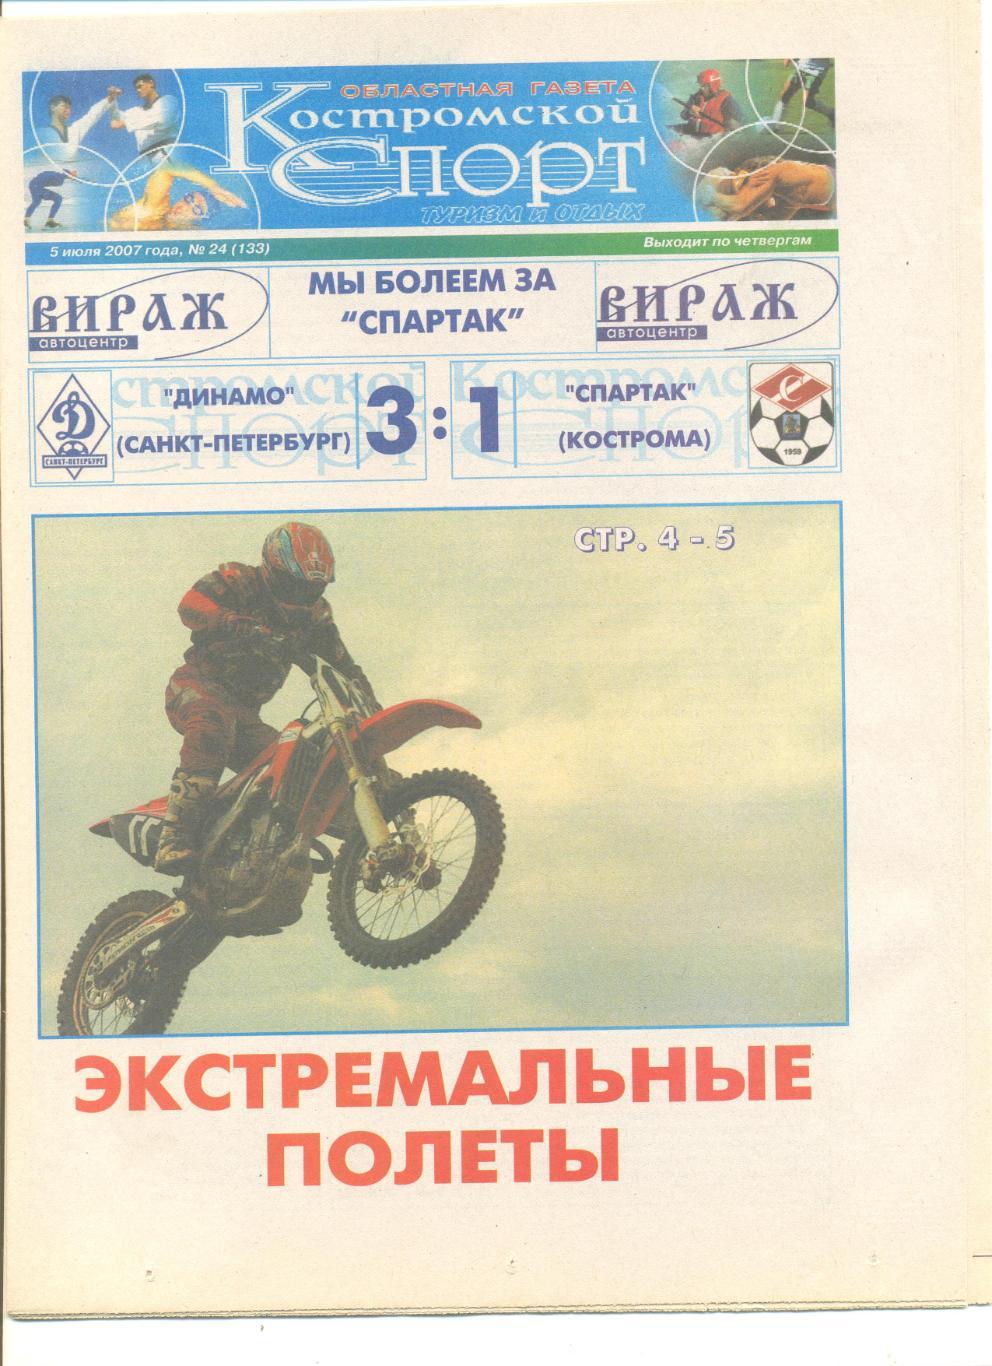 Костромской спорт 05.07.2007 г.